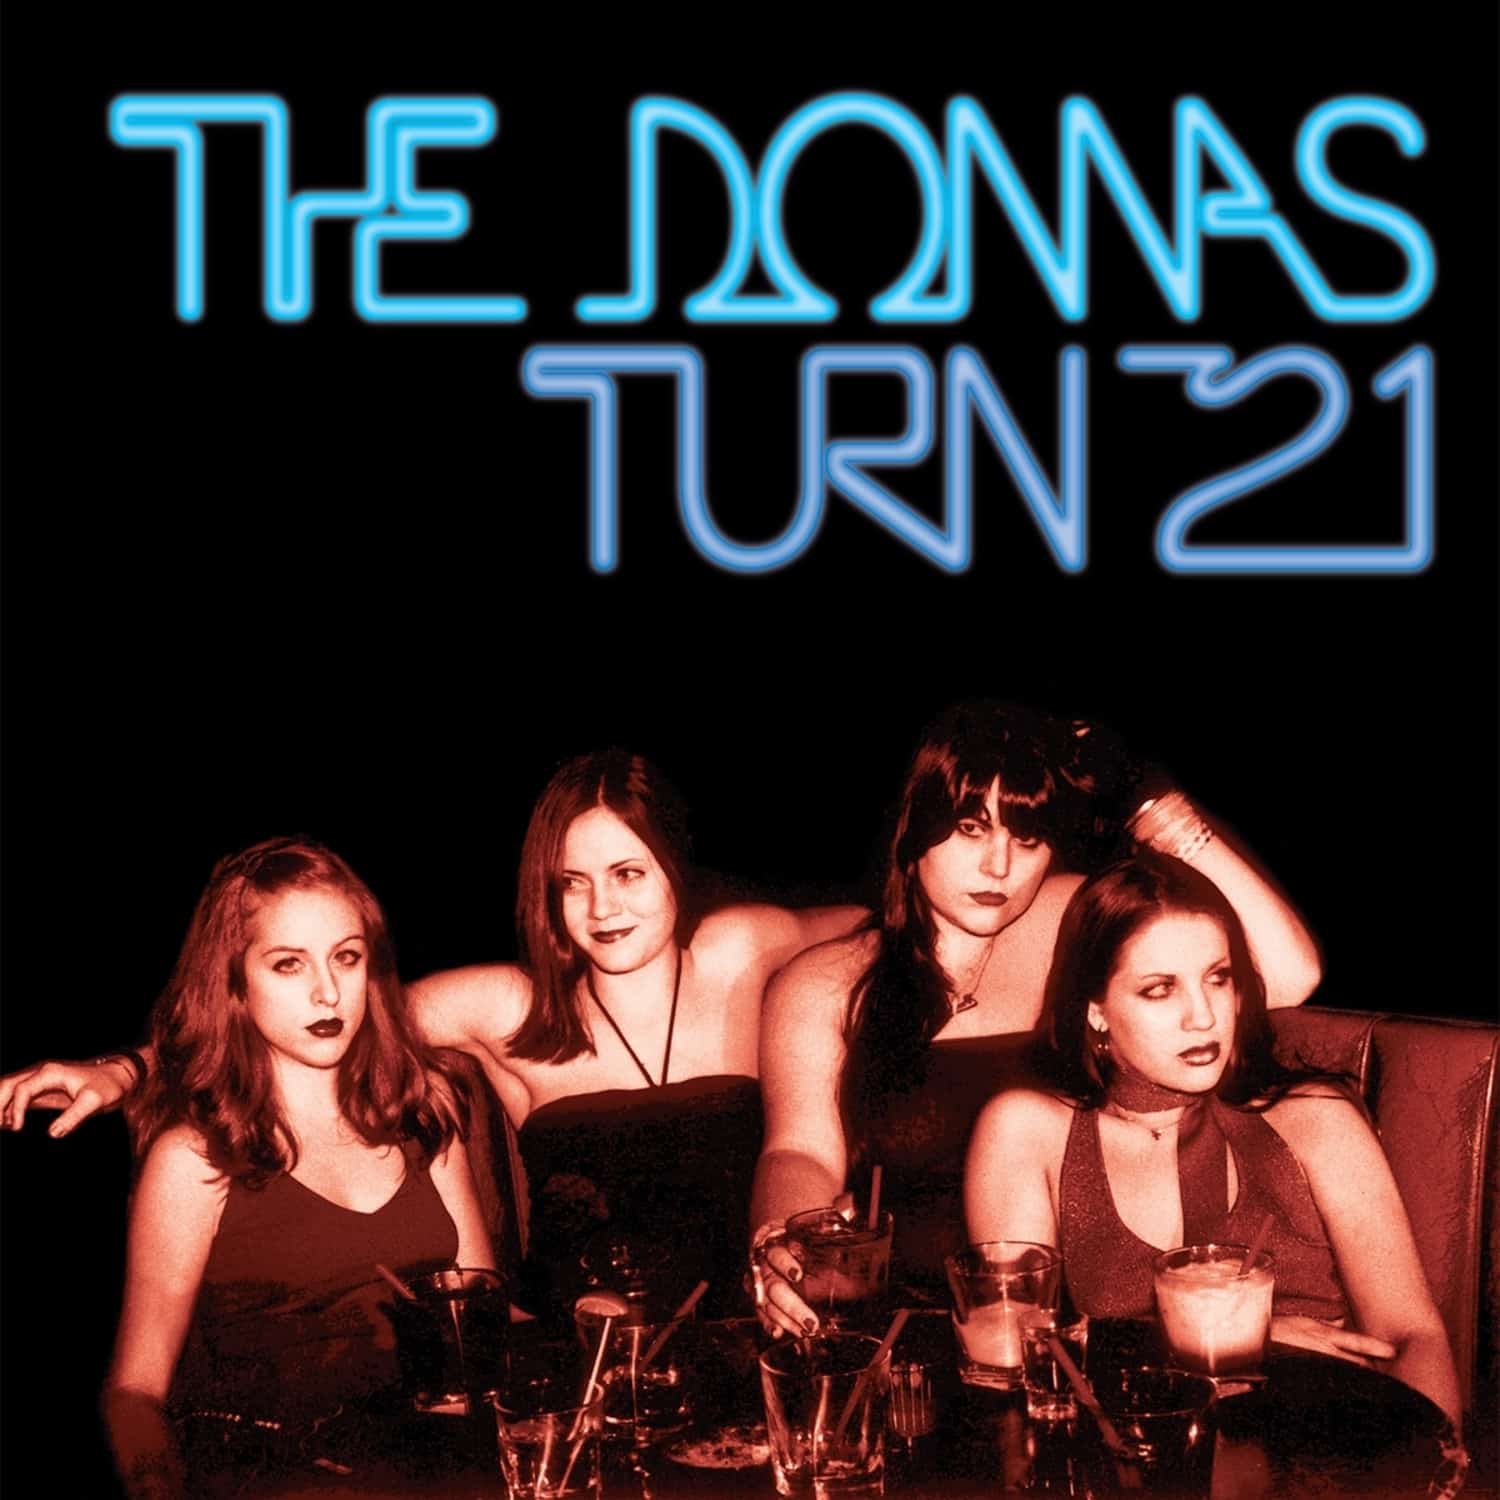 Donnas - TURN 21 